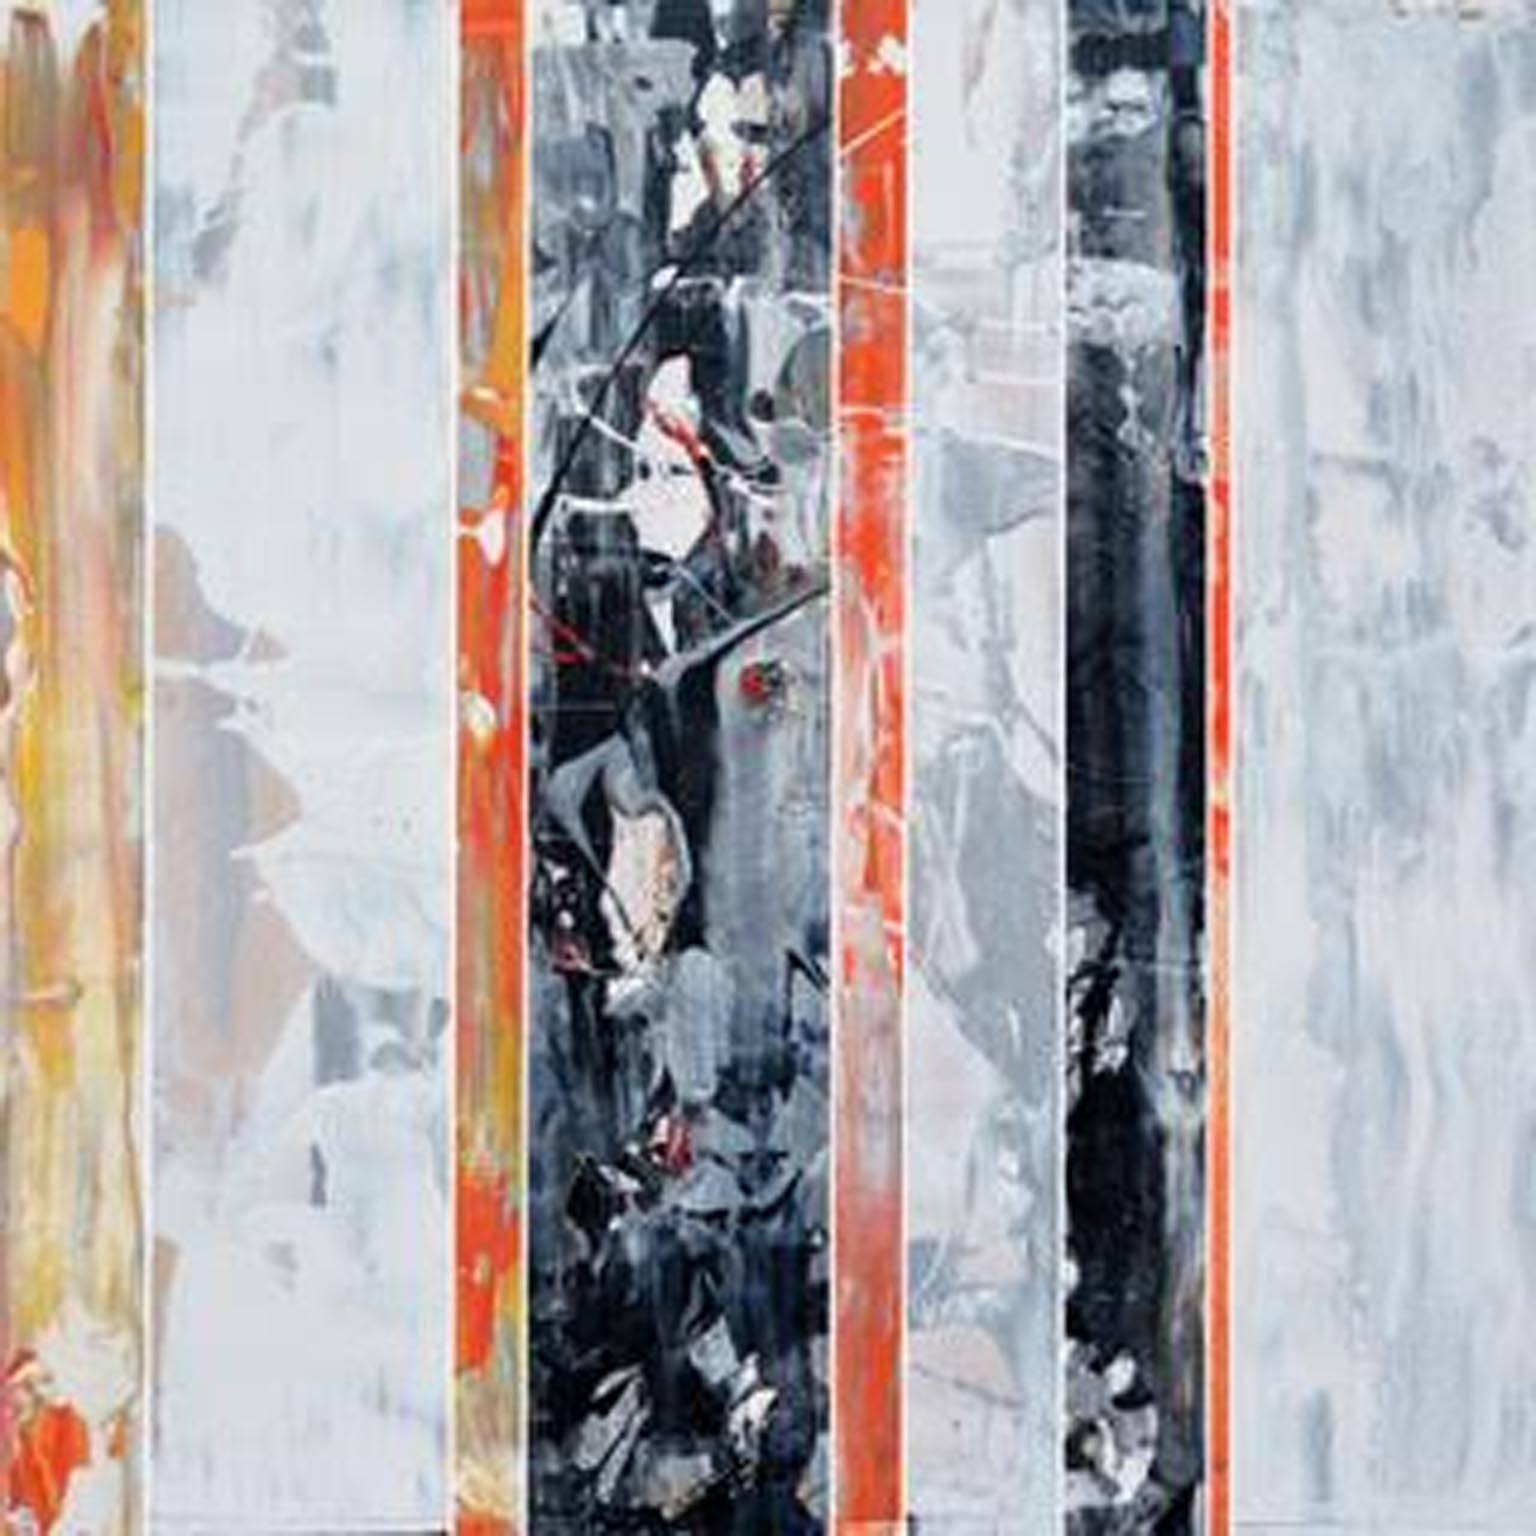 EQ redéfini série 1700-EU101-5, peinture abstraite, peinture orange et noire